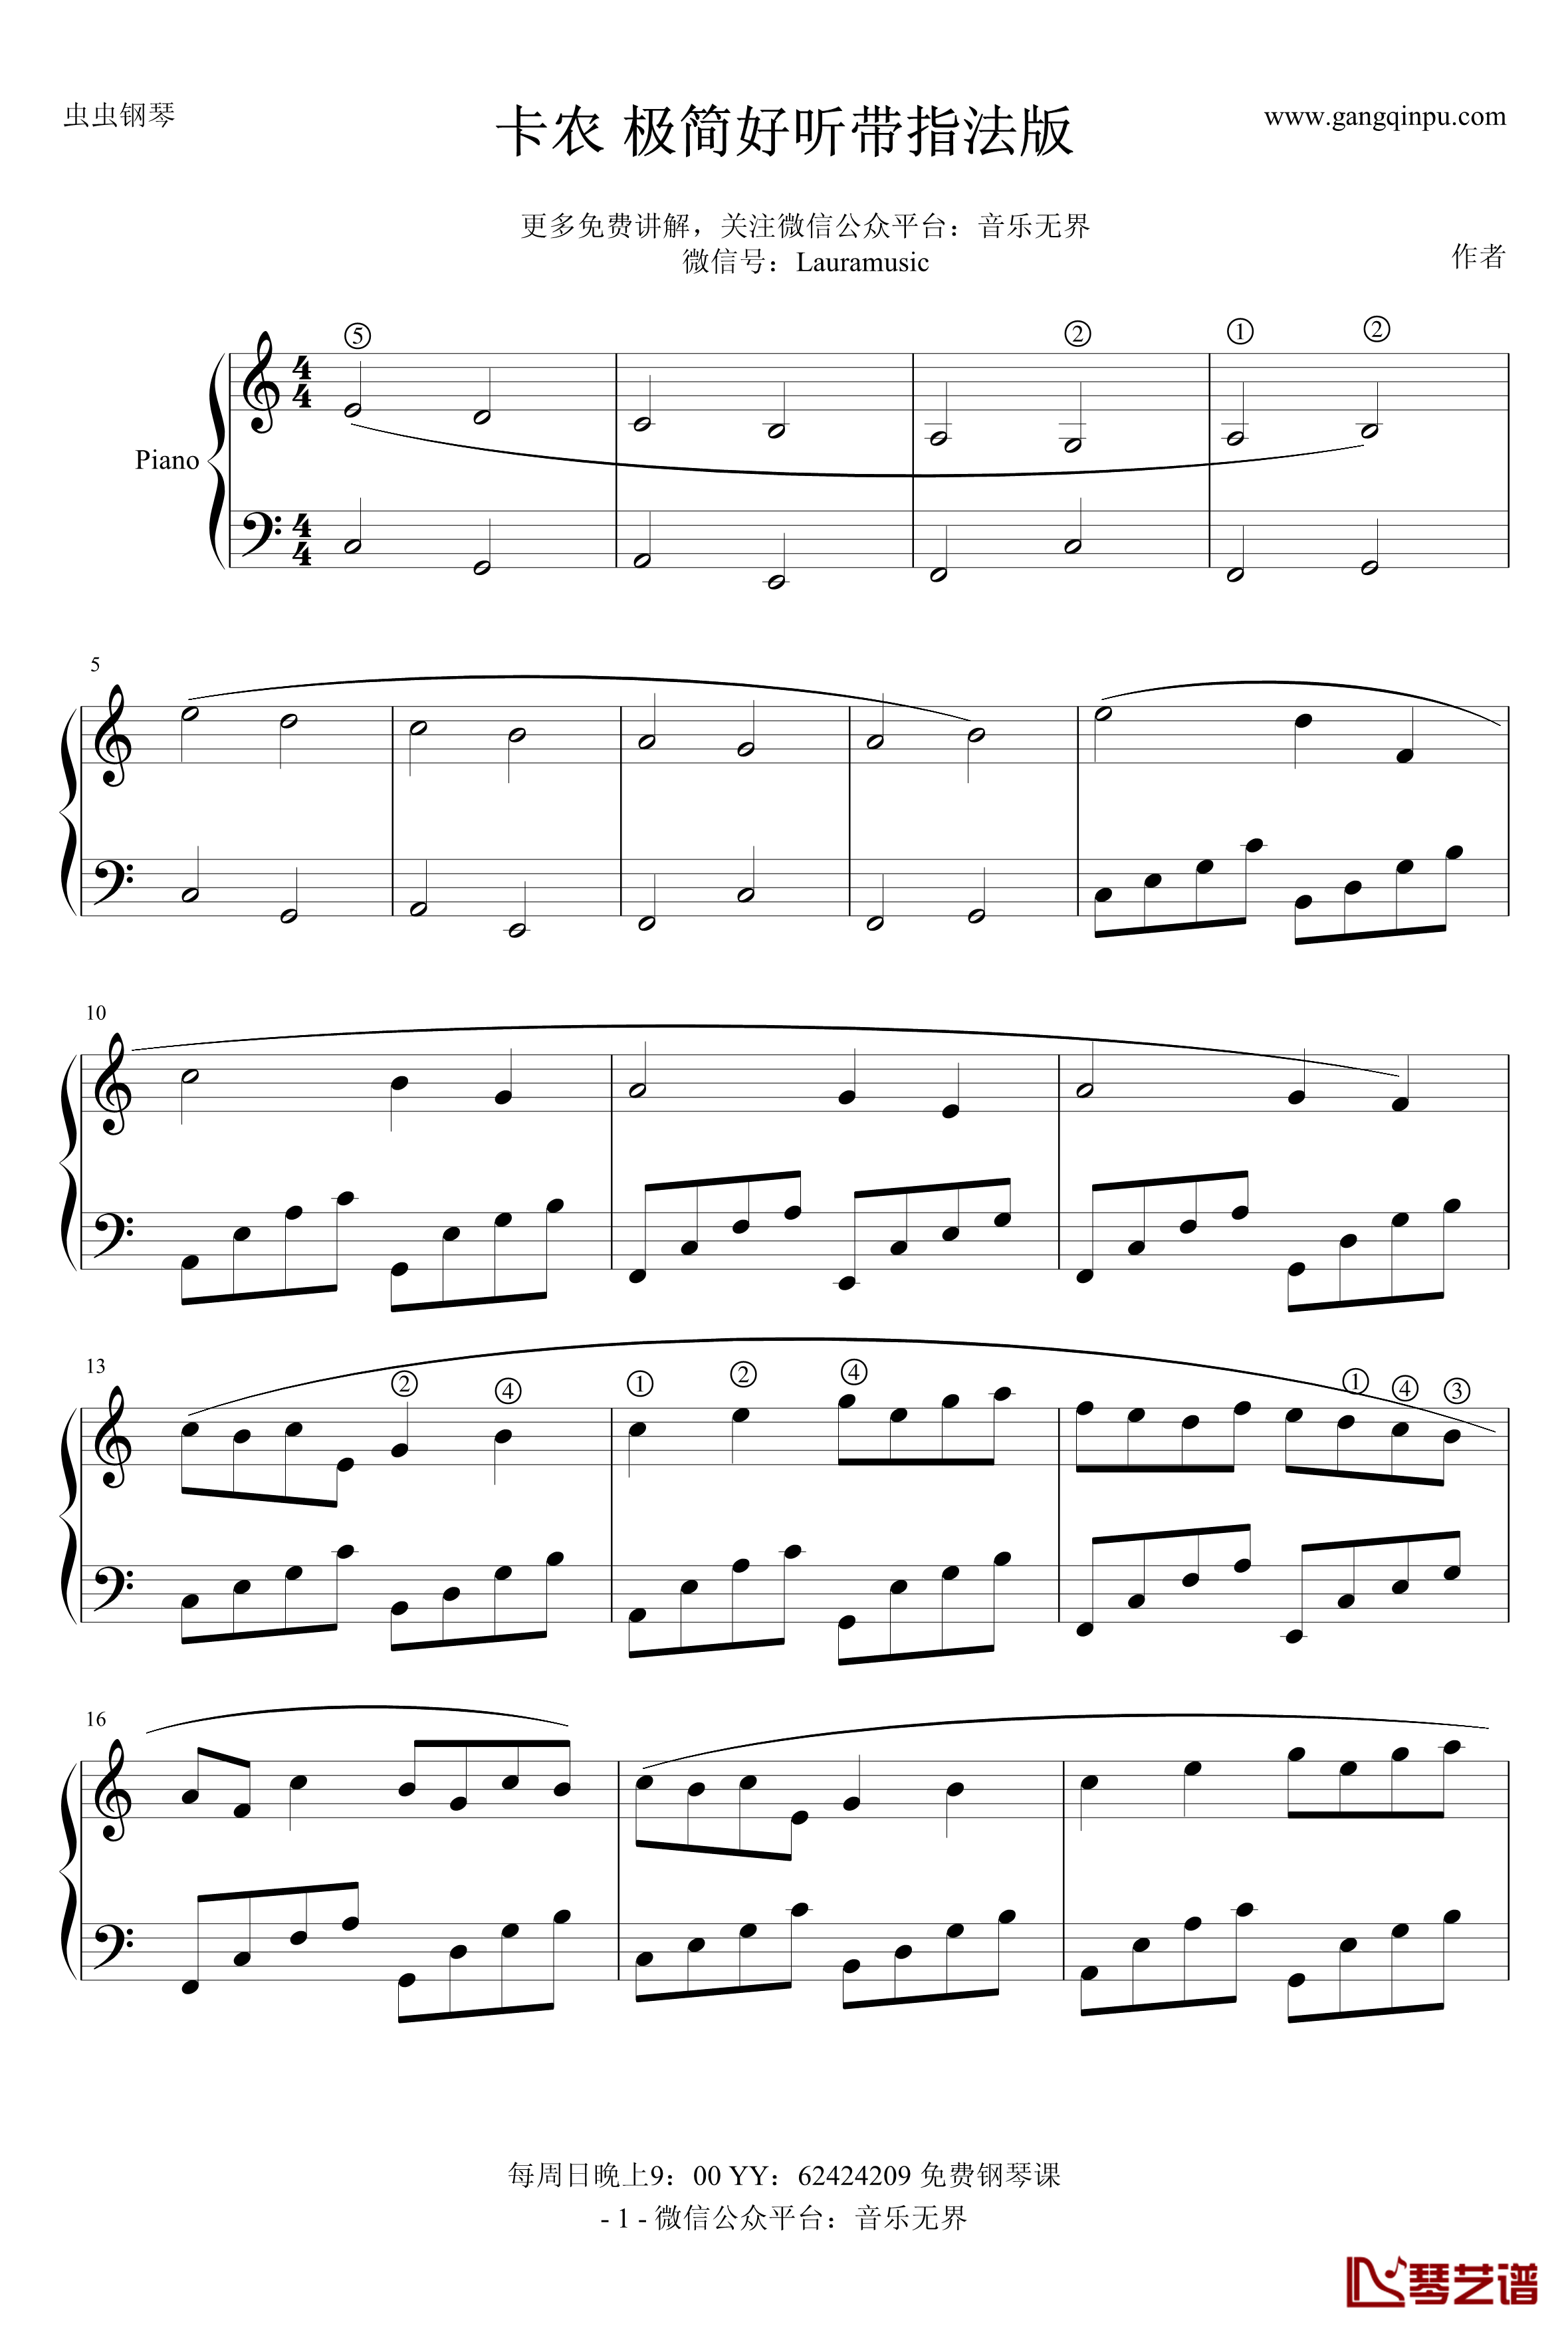 卡农钢琴谱-极简版带指法-帕赫贝尔-Pachelbel